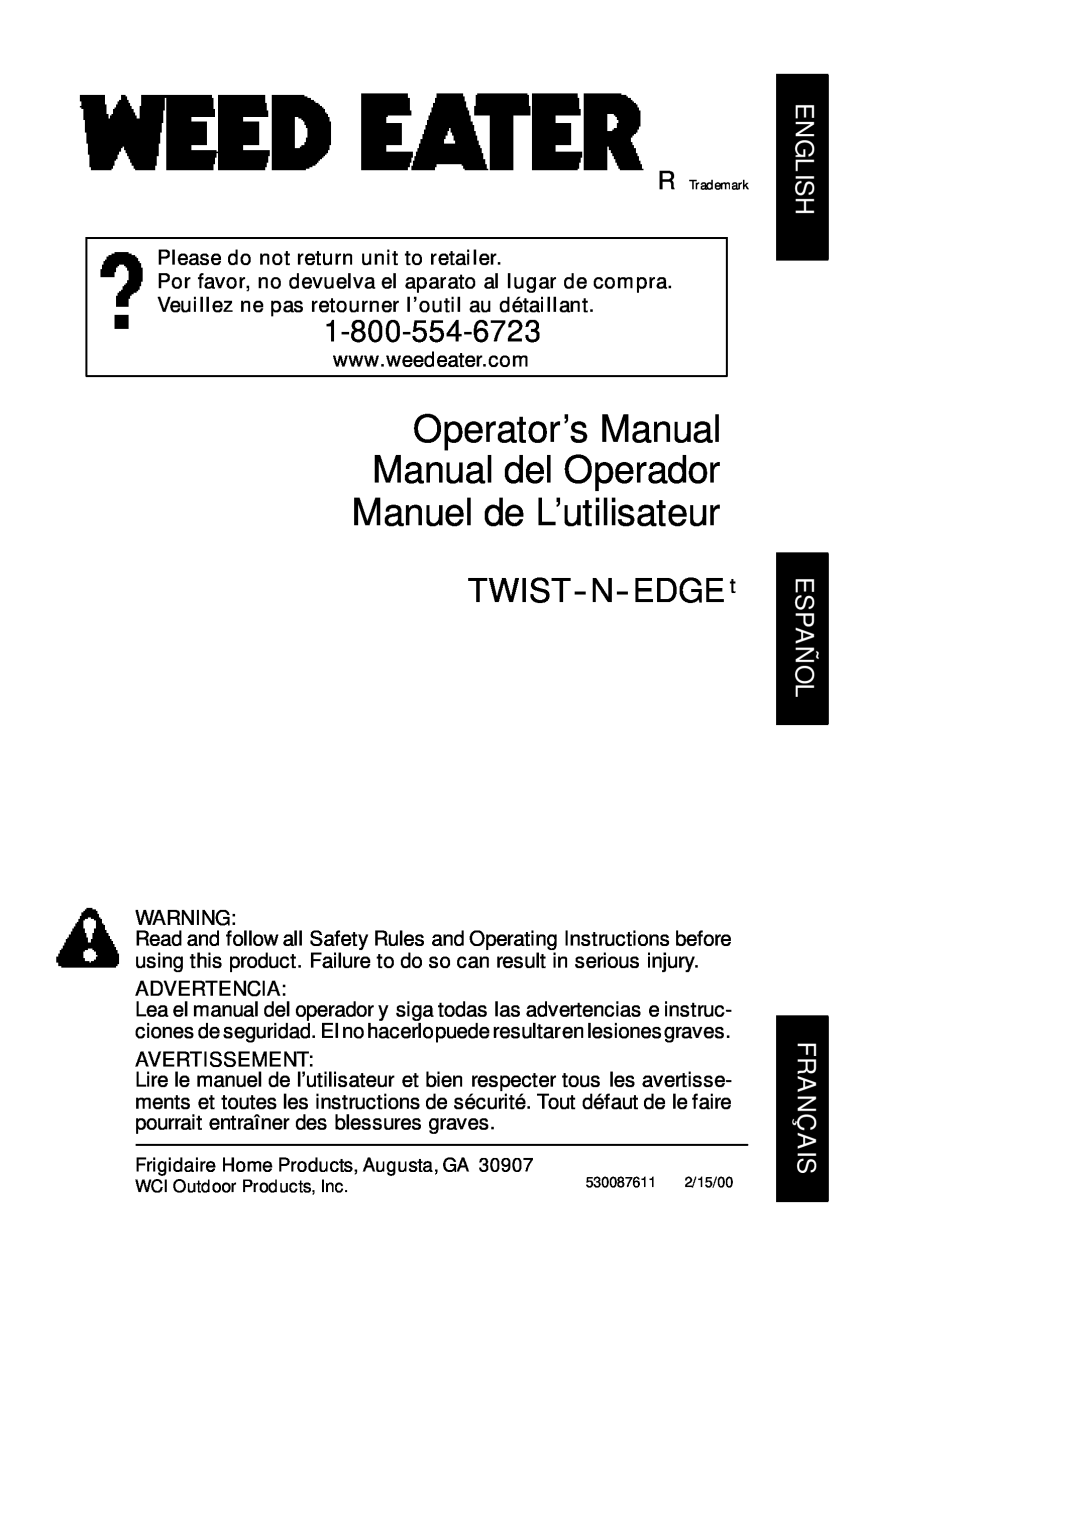 Poulan TWIST--N--EDGEt manual Please do not return unit to retailer, Advertencia, Avertissement, Manuel de L’utilisateur 